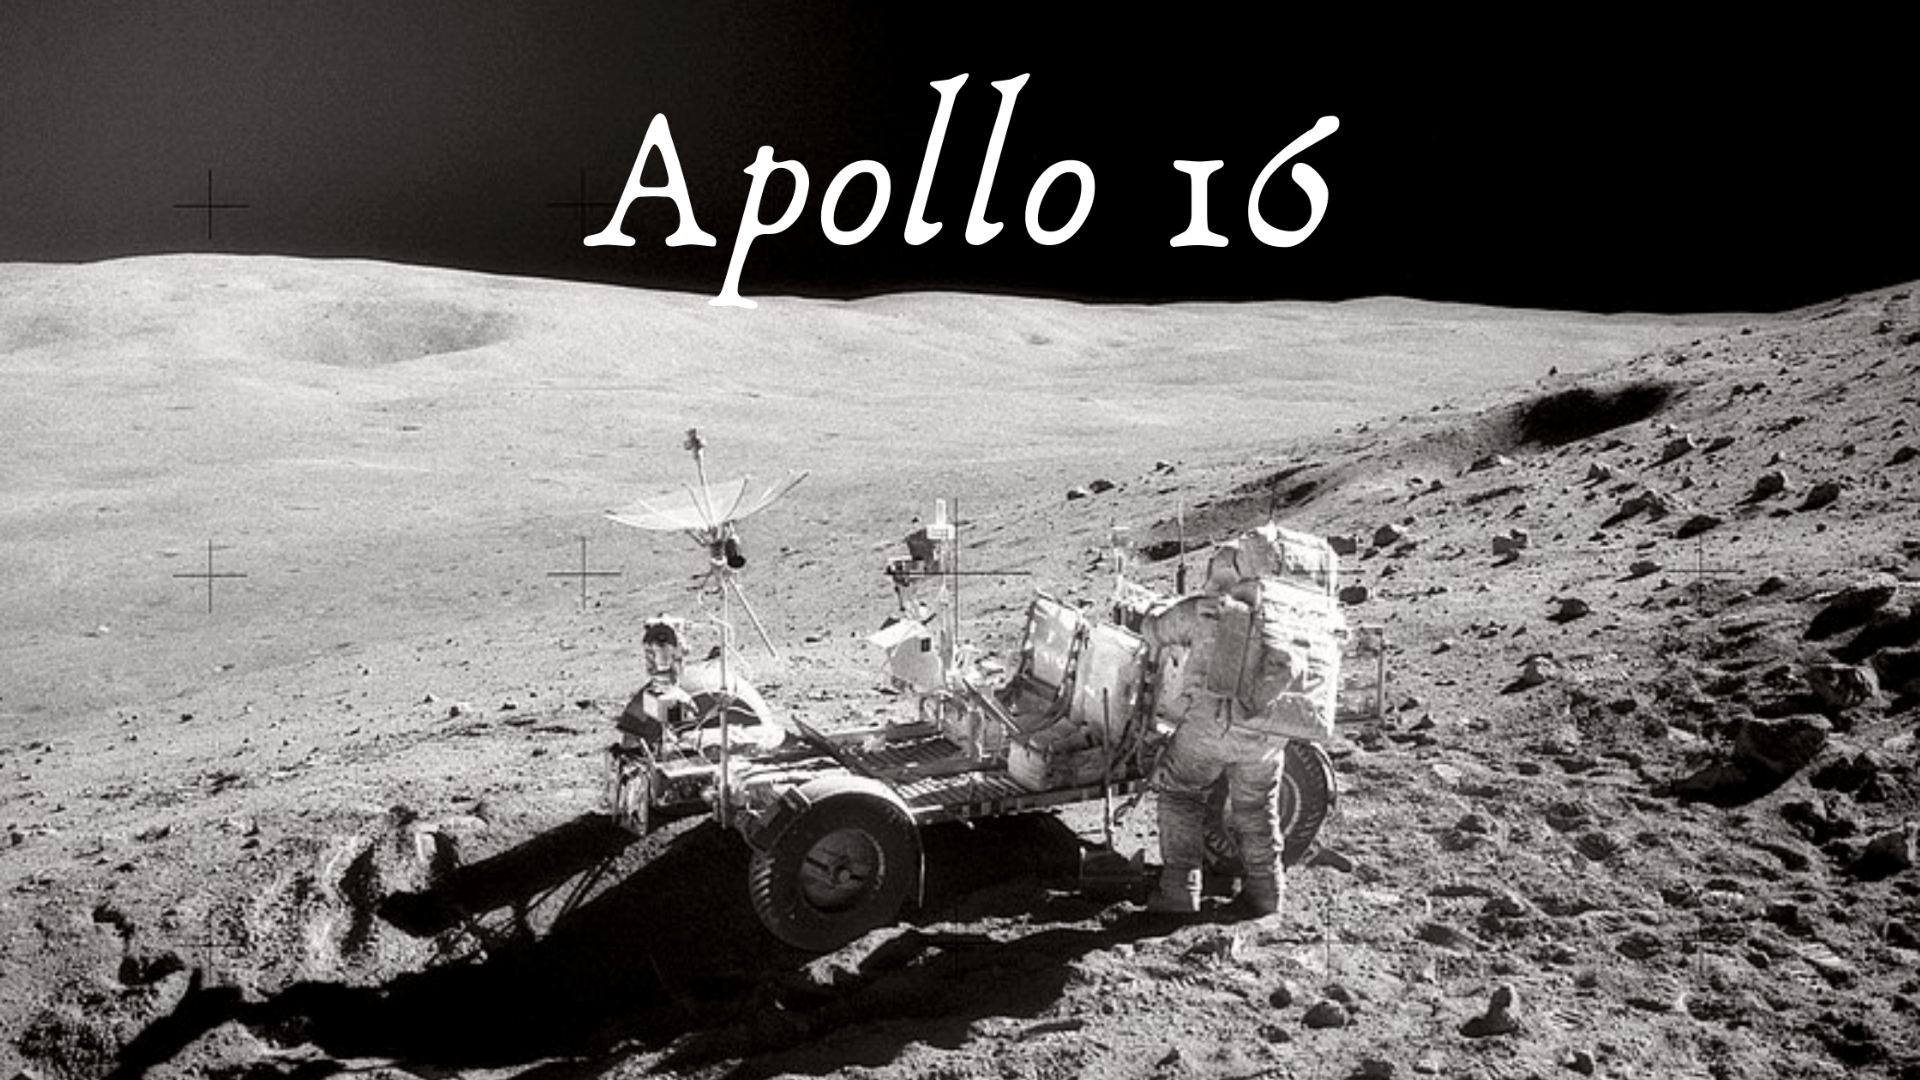 Apollo 16 header